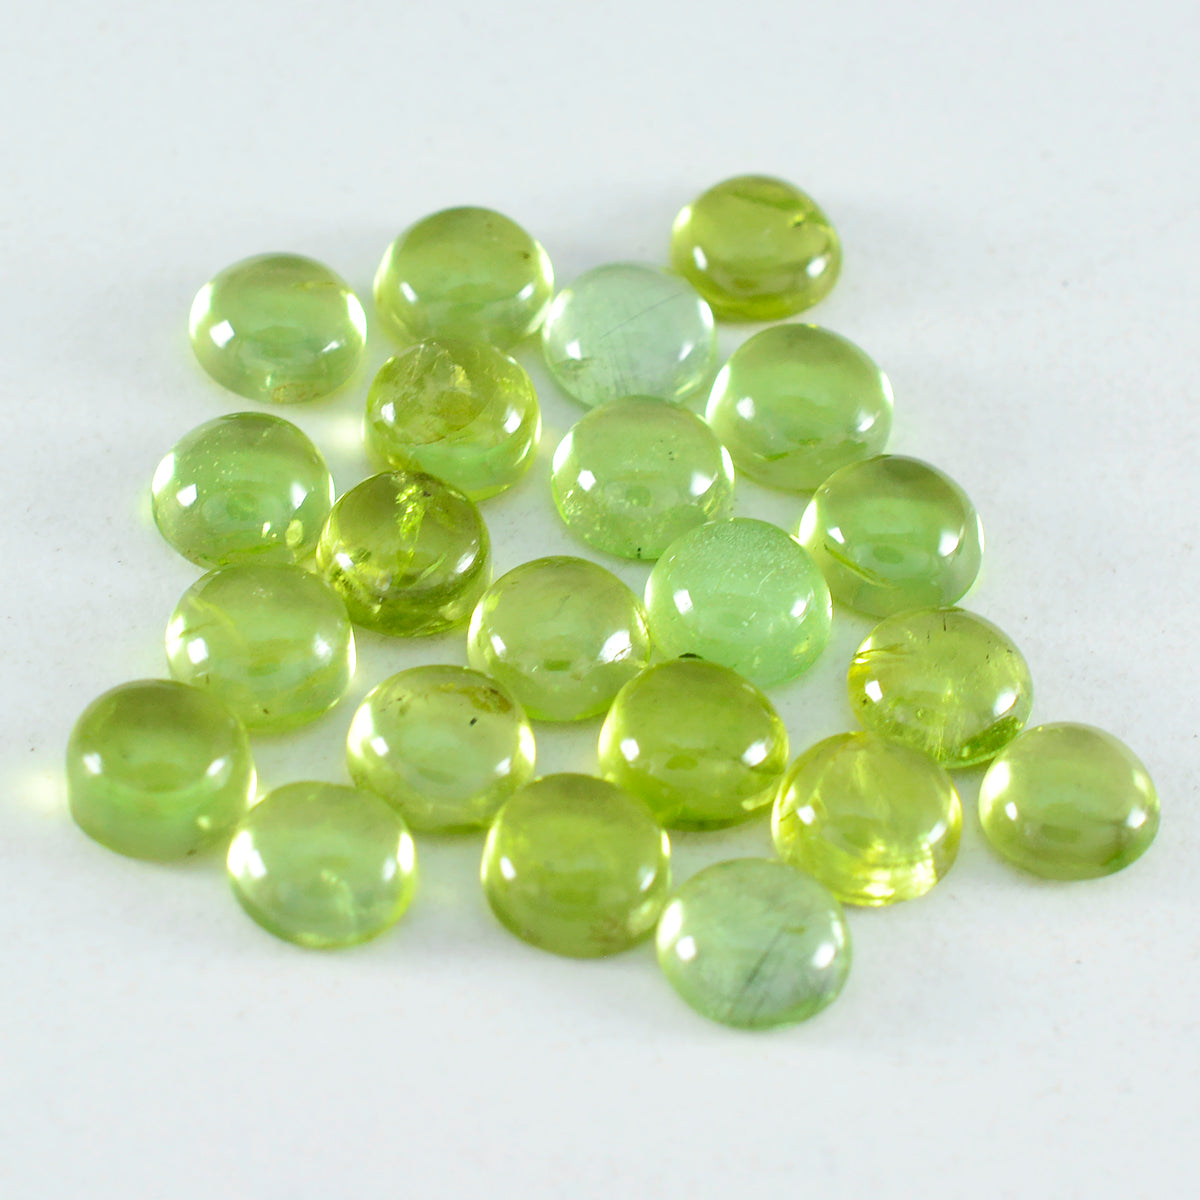 Riyogems 1 pc cabochon péridot vert 5x5 mm forme ronde a + qualité gemme en vrac